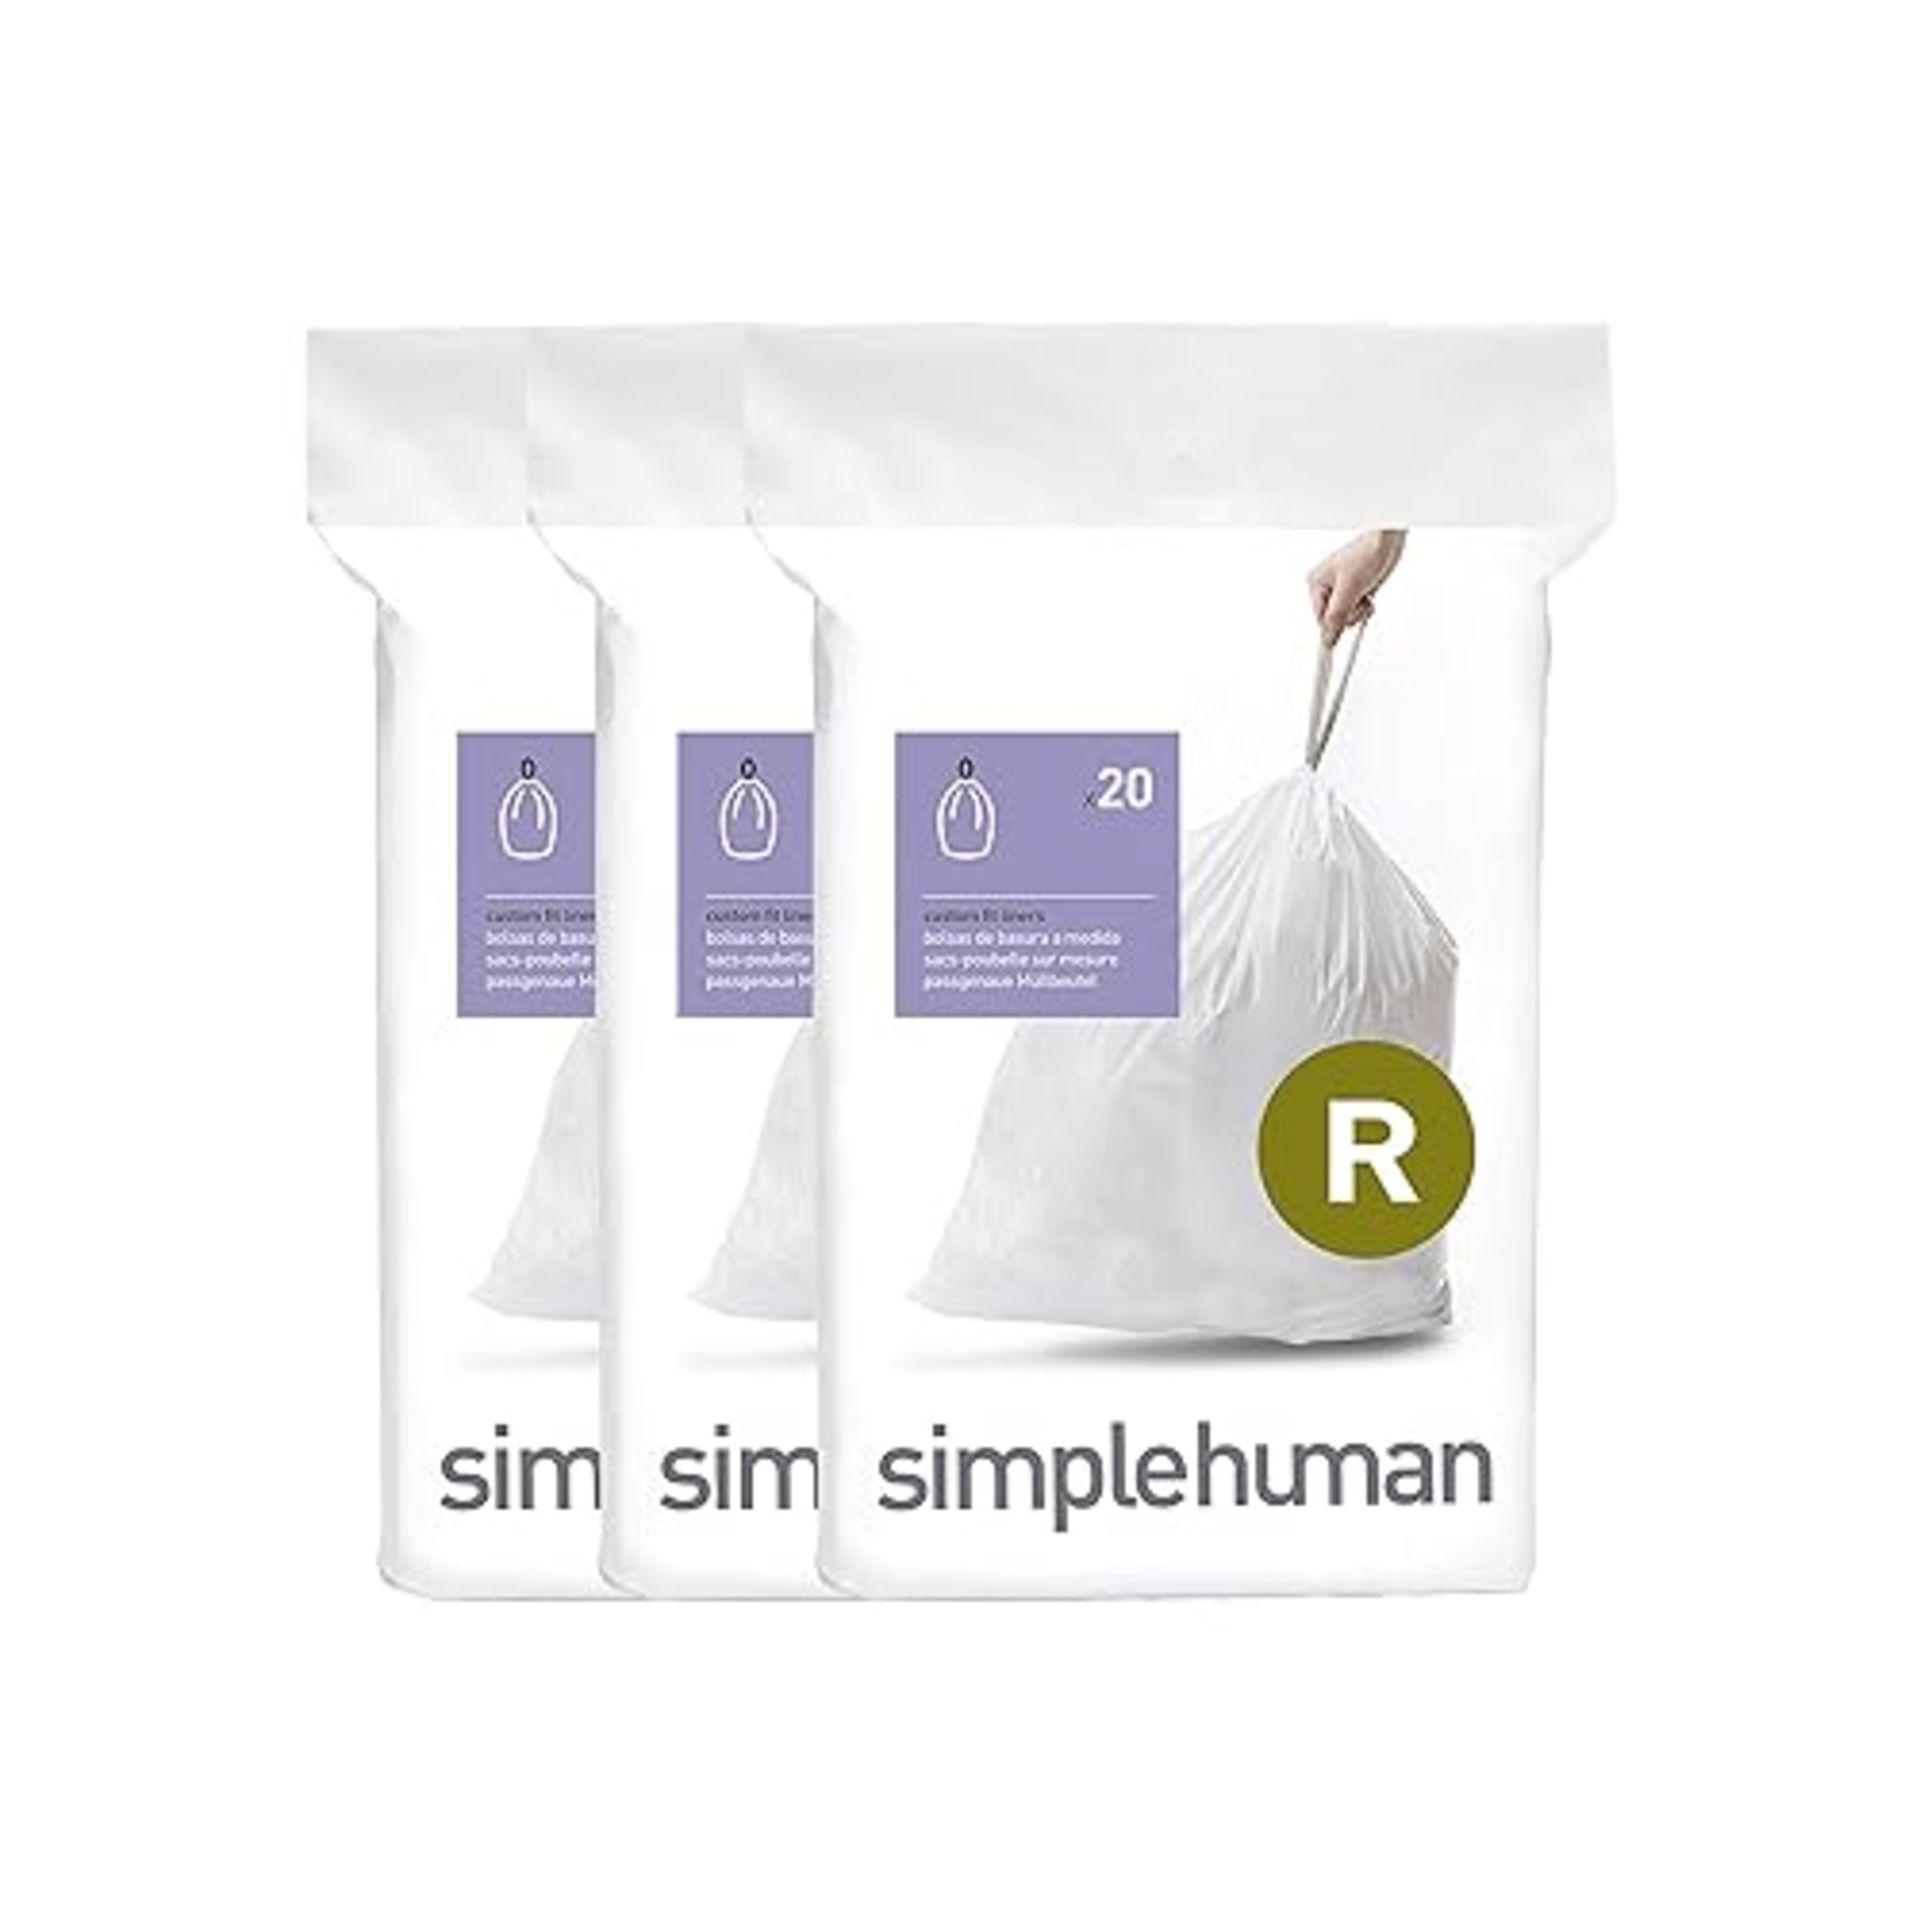 simplehuman CW0253 code R Custom Fit Bin Liner Bulk Pack, White Plastic (3 Pack of 20, Total 60 Lin